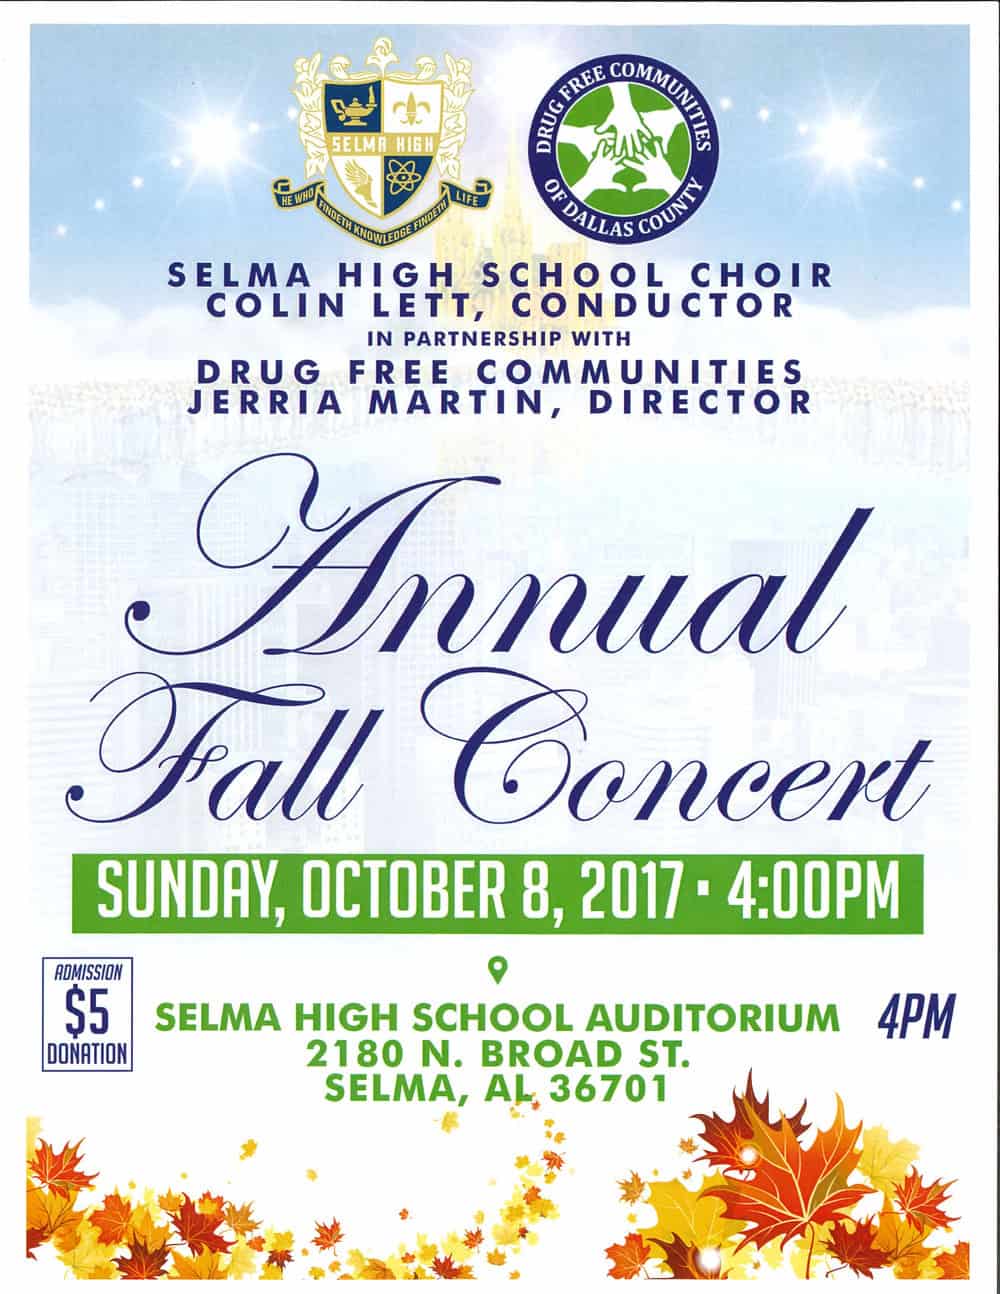 Selma High Choir Annual Fall Concert